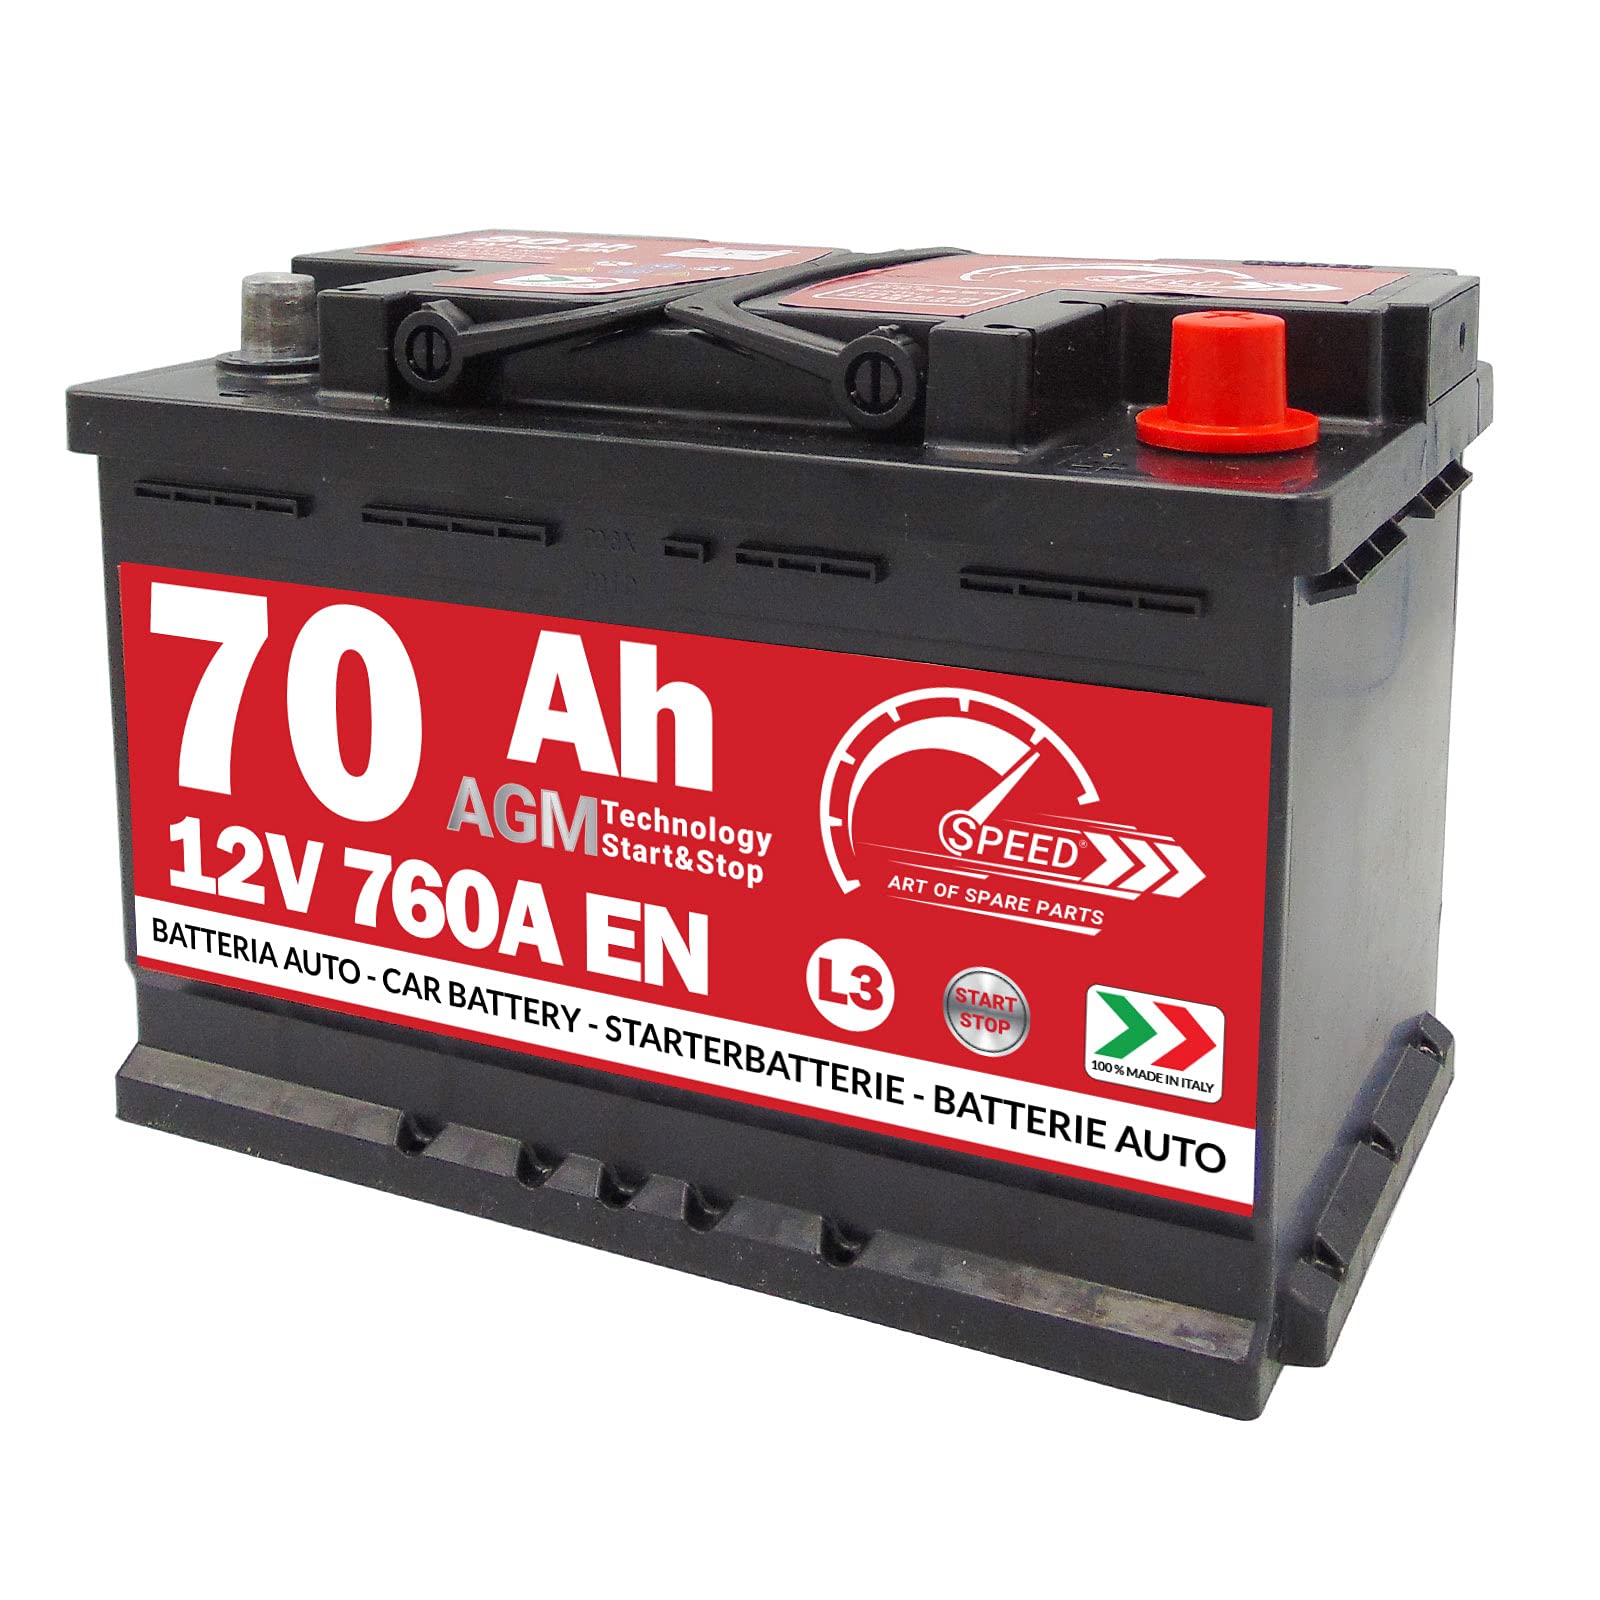 Speed Autobatterie AGM 70Ah 760A Start&Stop L3 von SMC